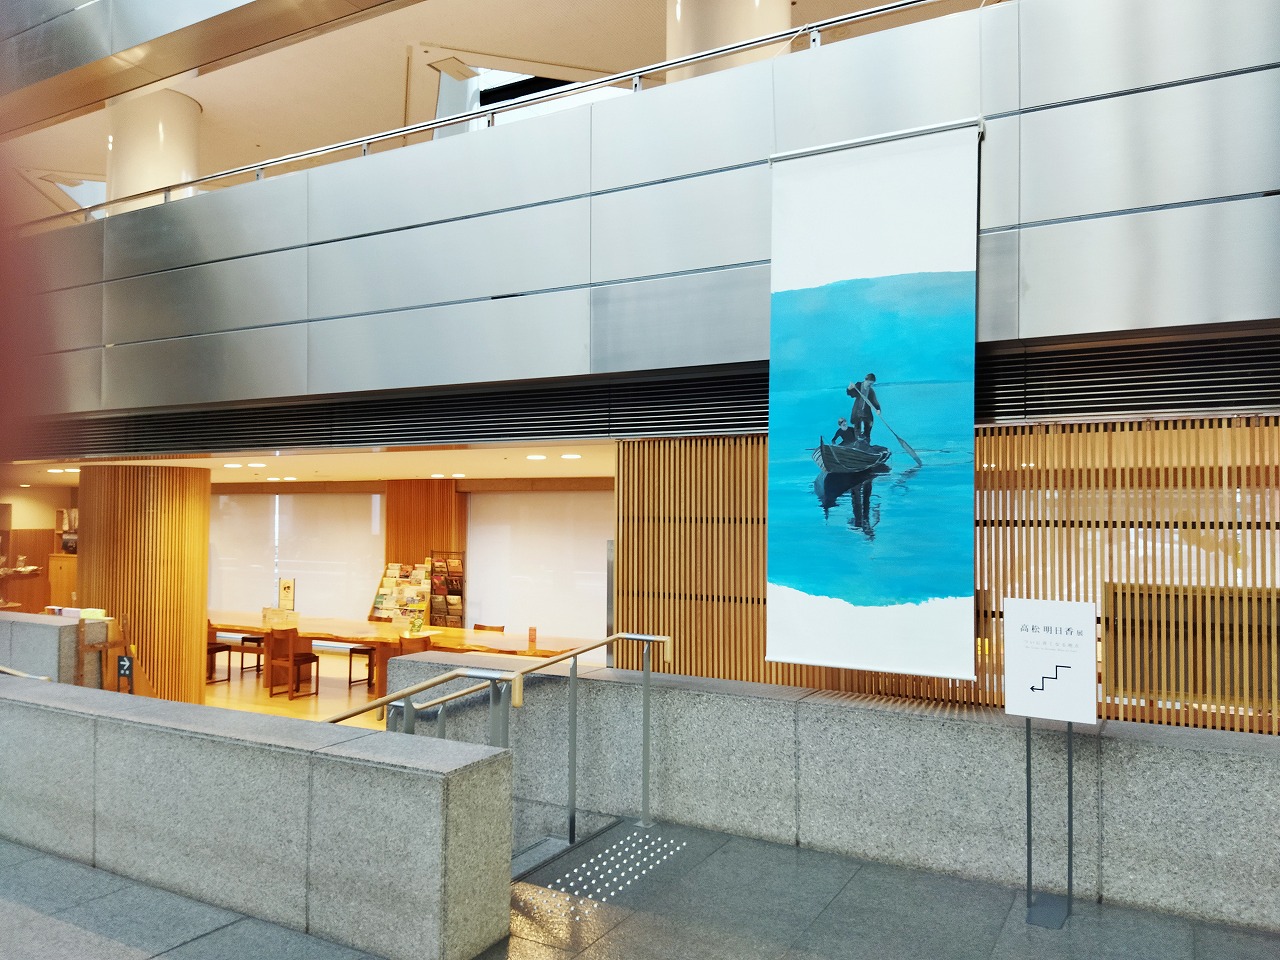 本日13日より始まる高松市美術館での展示の様子が届きました。